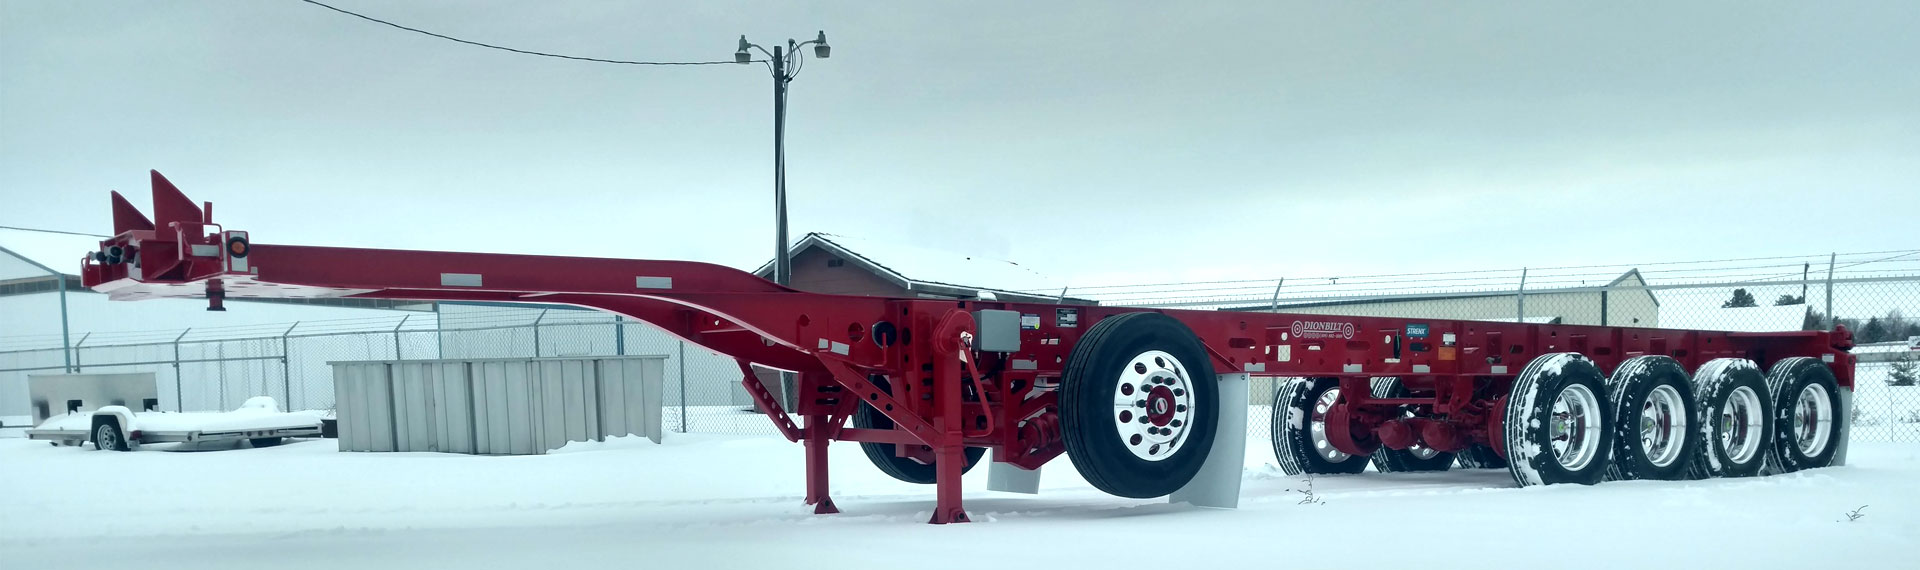 Un șasiu de remorcă lung și ușor fabricat din Strenx® 100 pe un sol acoperit cu zăpadă